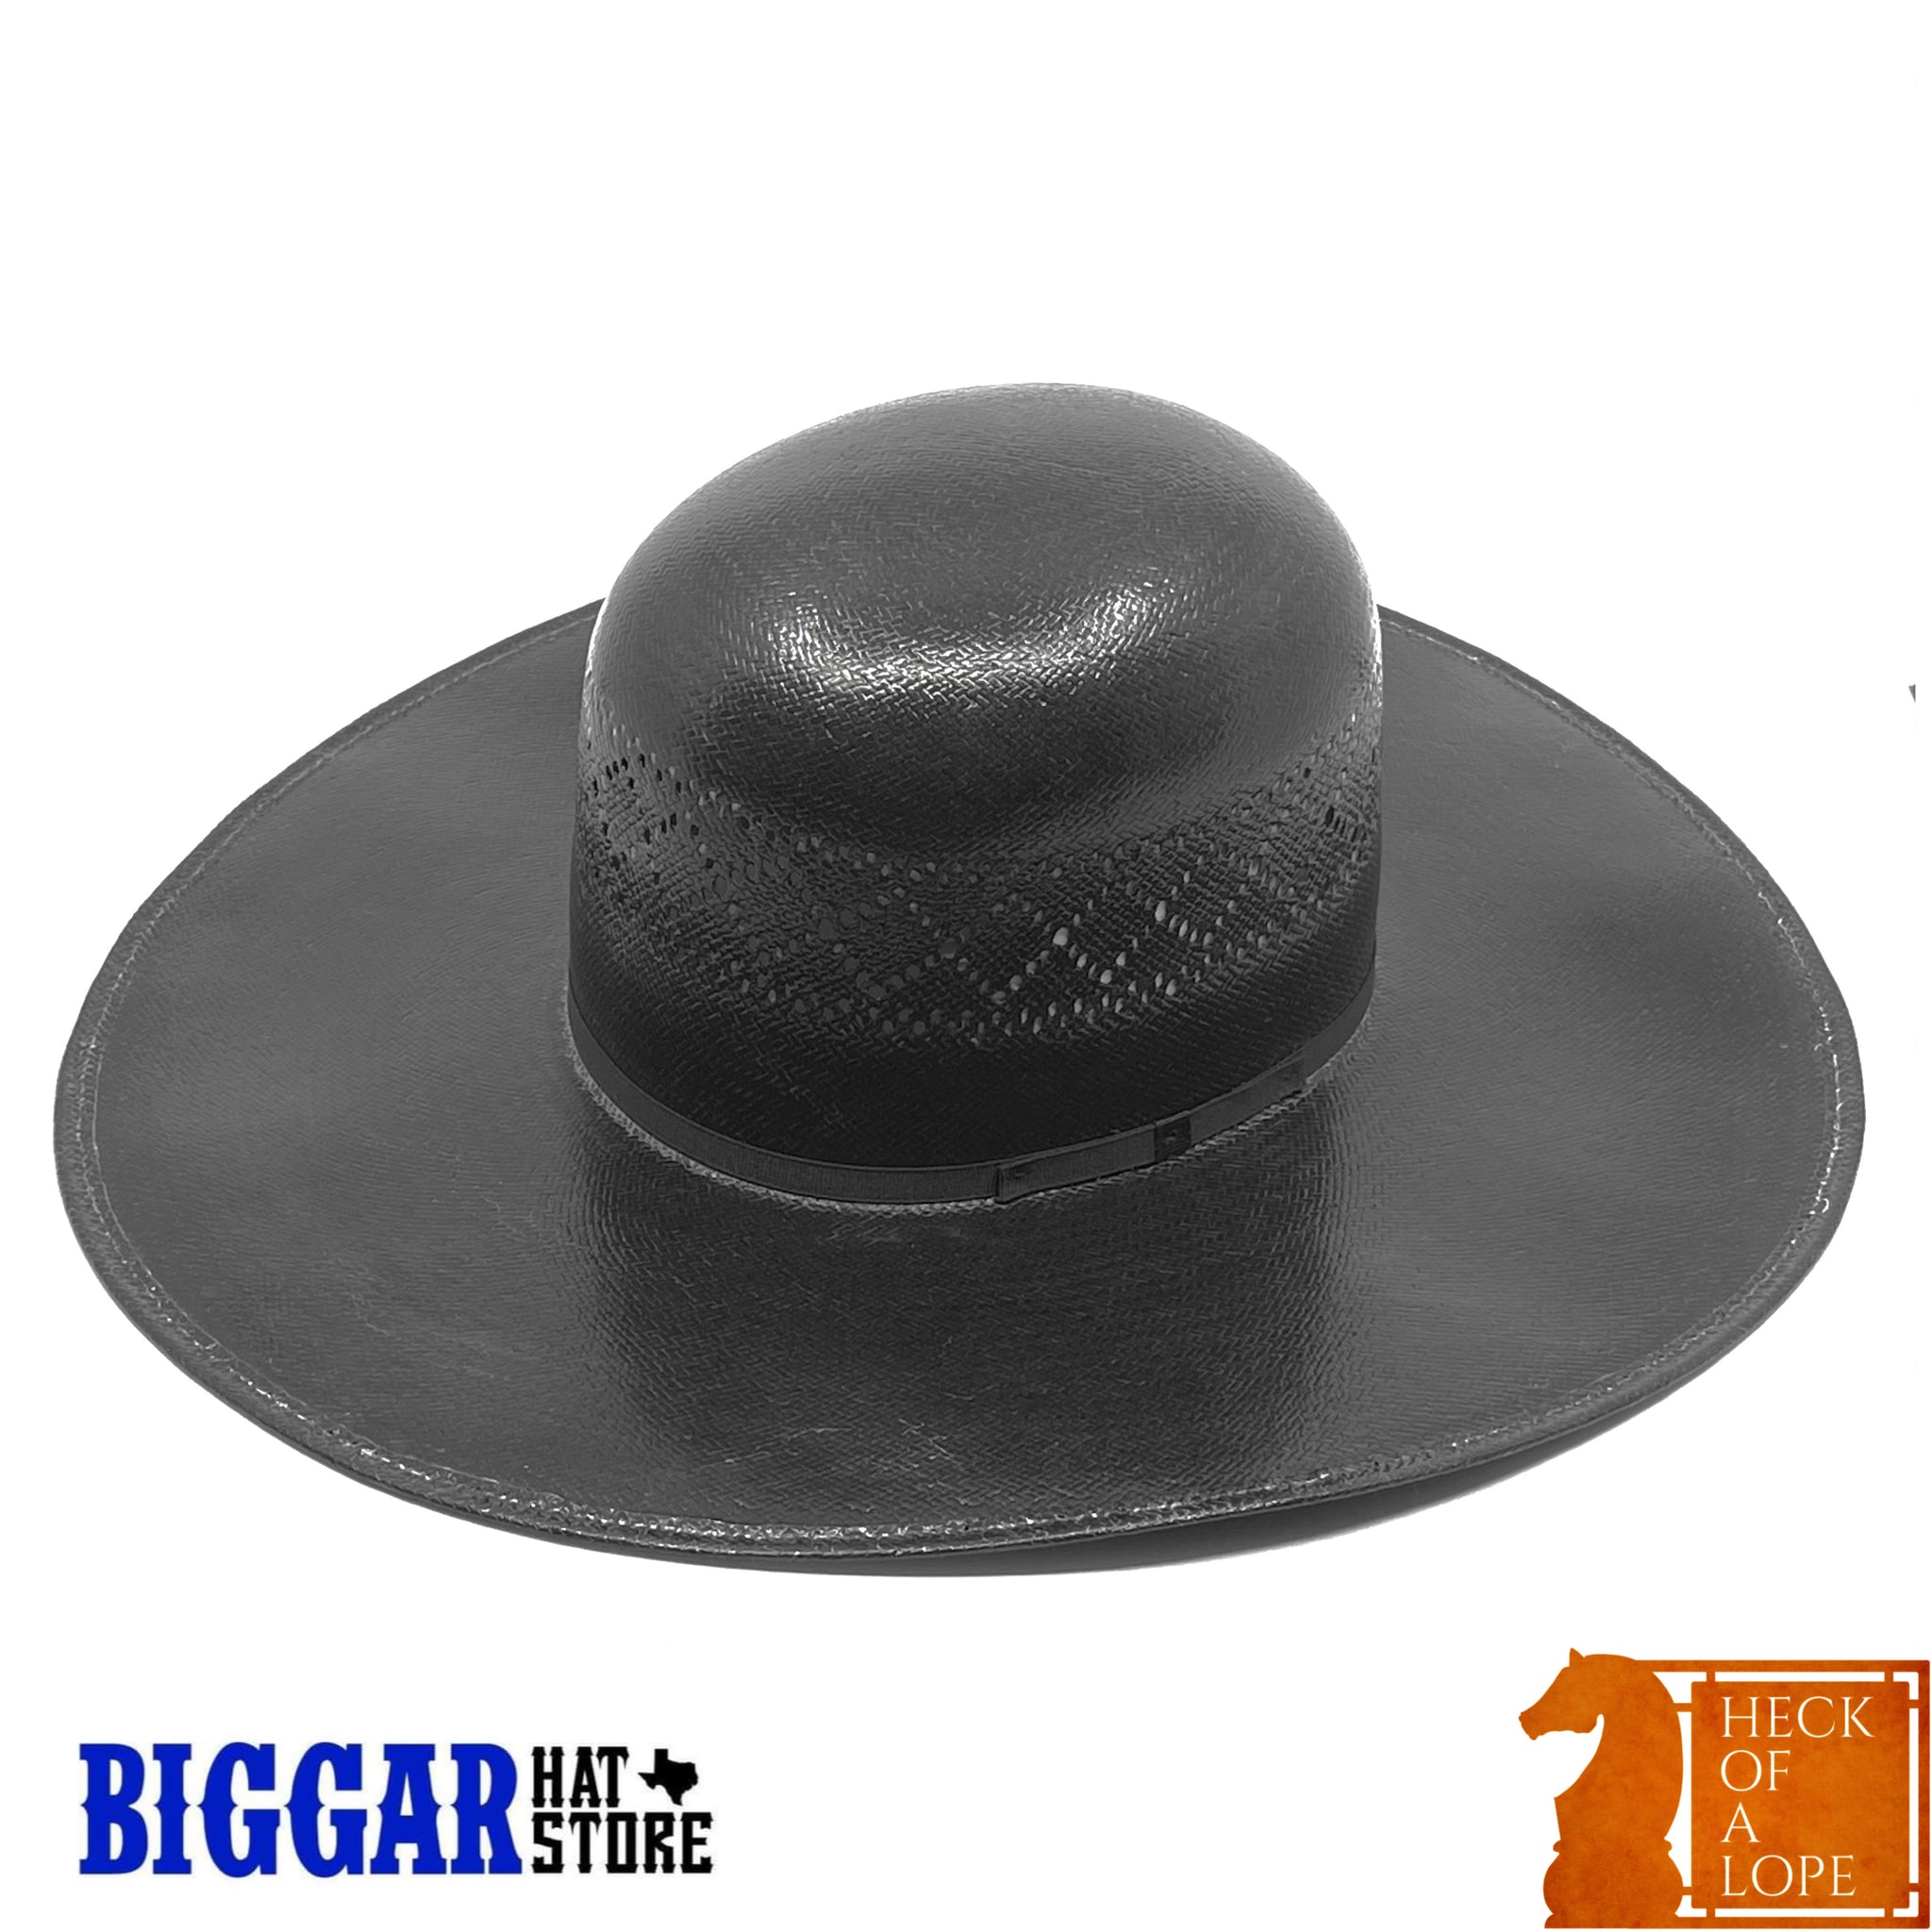 Biggar Hats "Garland Black" Straw Hat (5 Inch Brim)